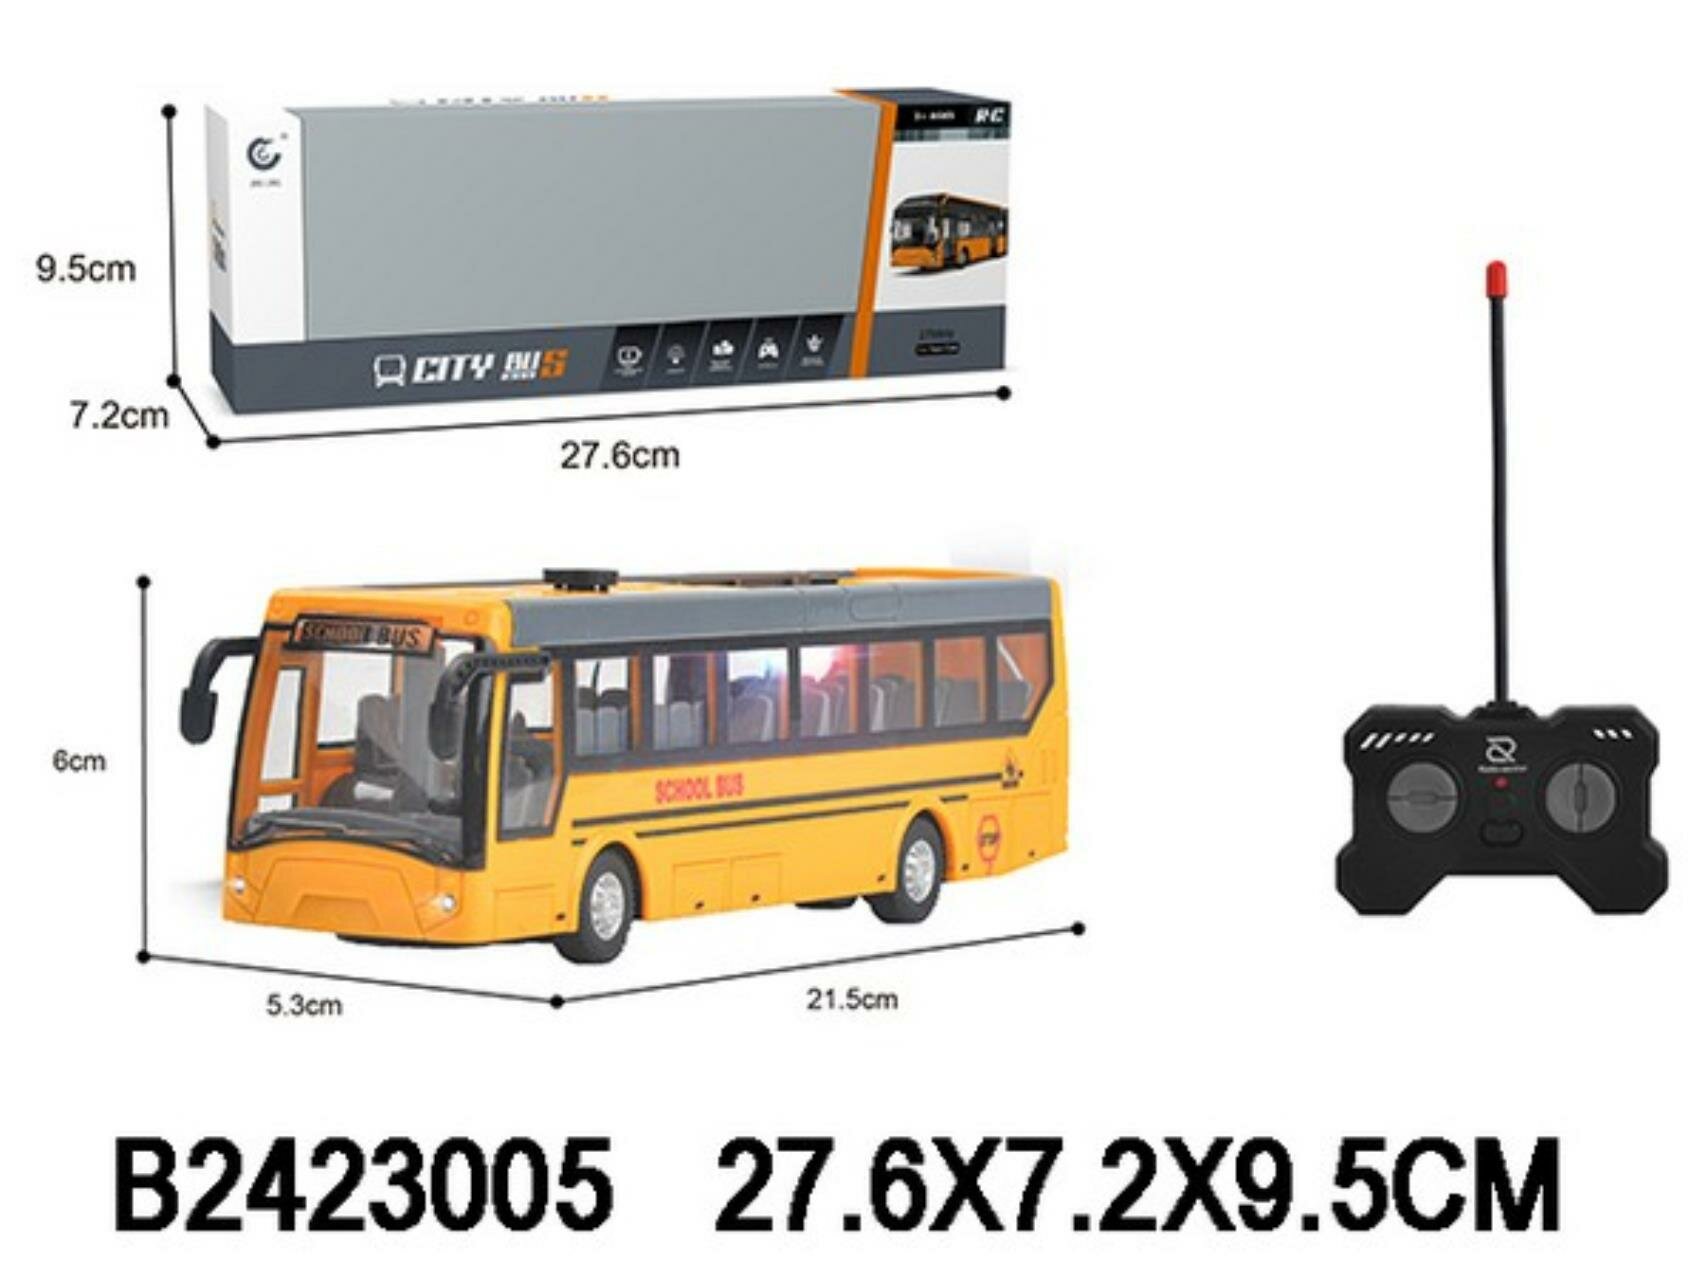 Автобус на пульте р у, световые эффекты, размер: 6,5x5,3x37 см, в к 27,6x7,2x9,5 см